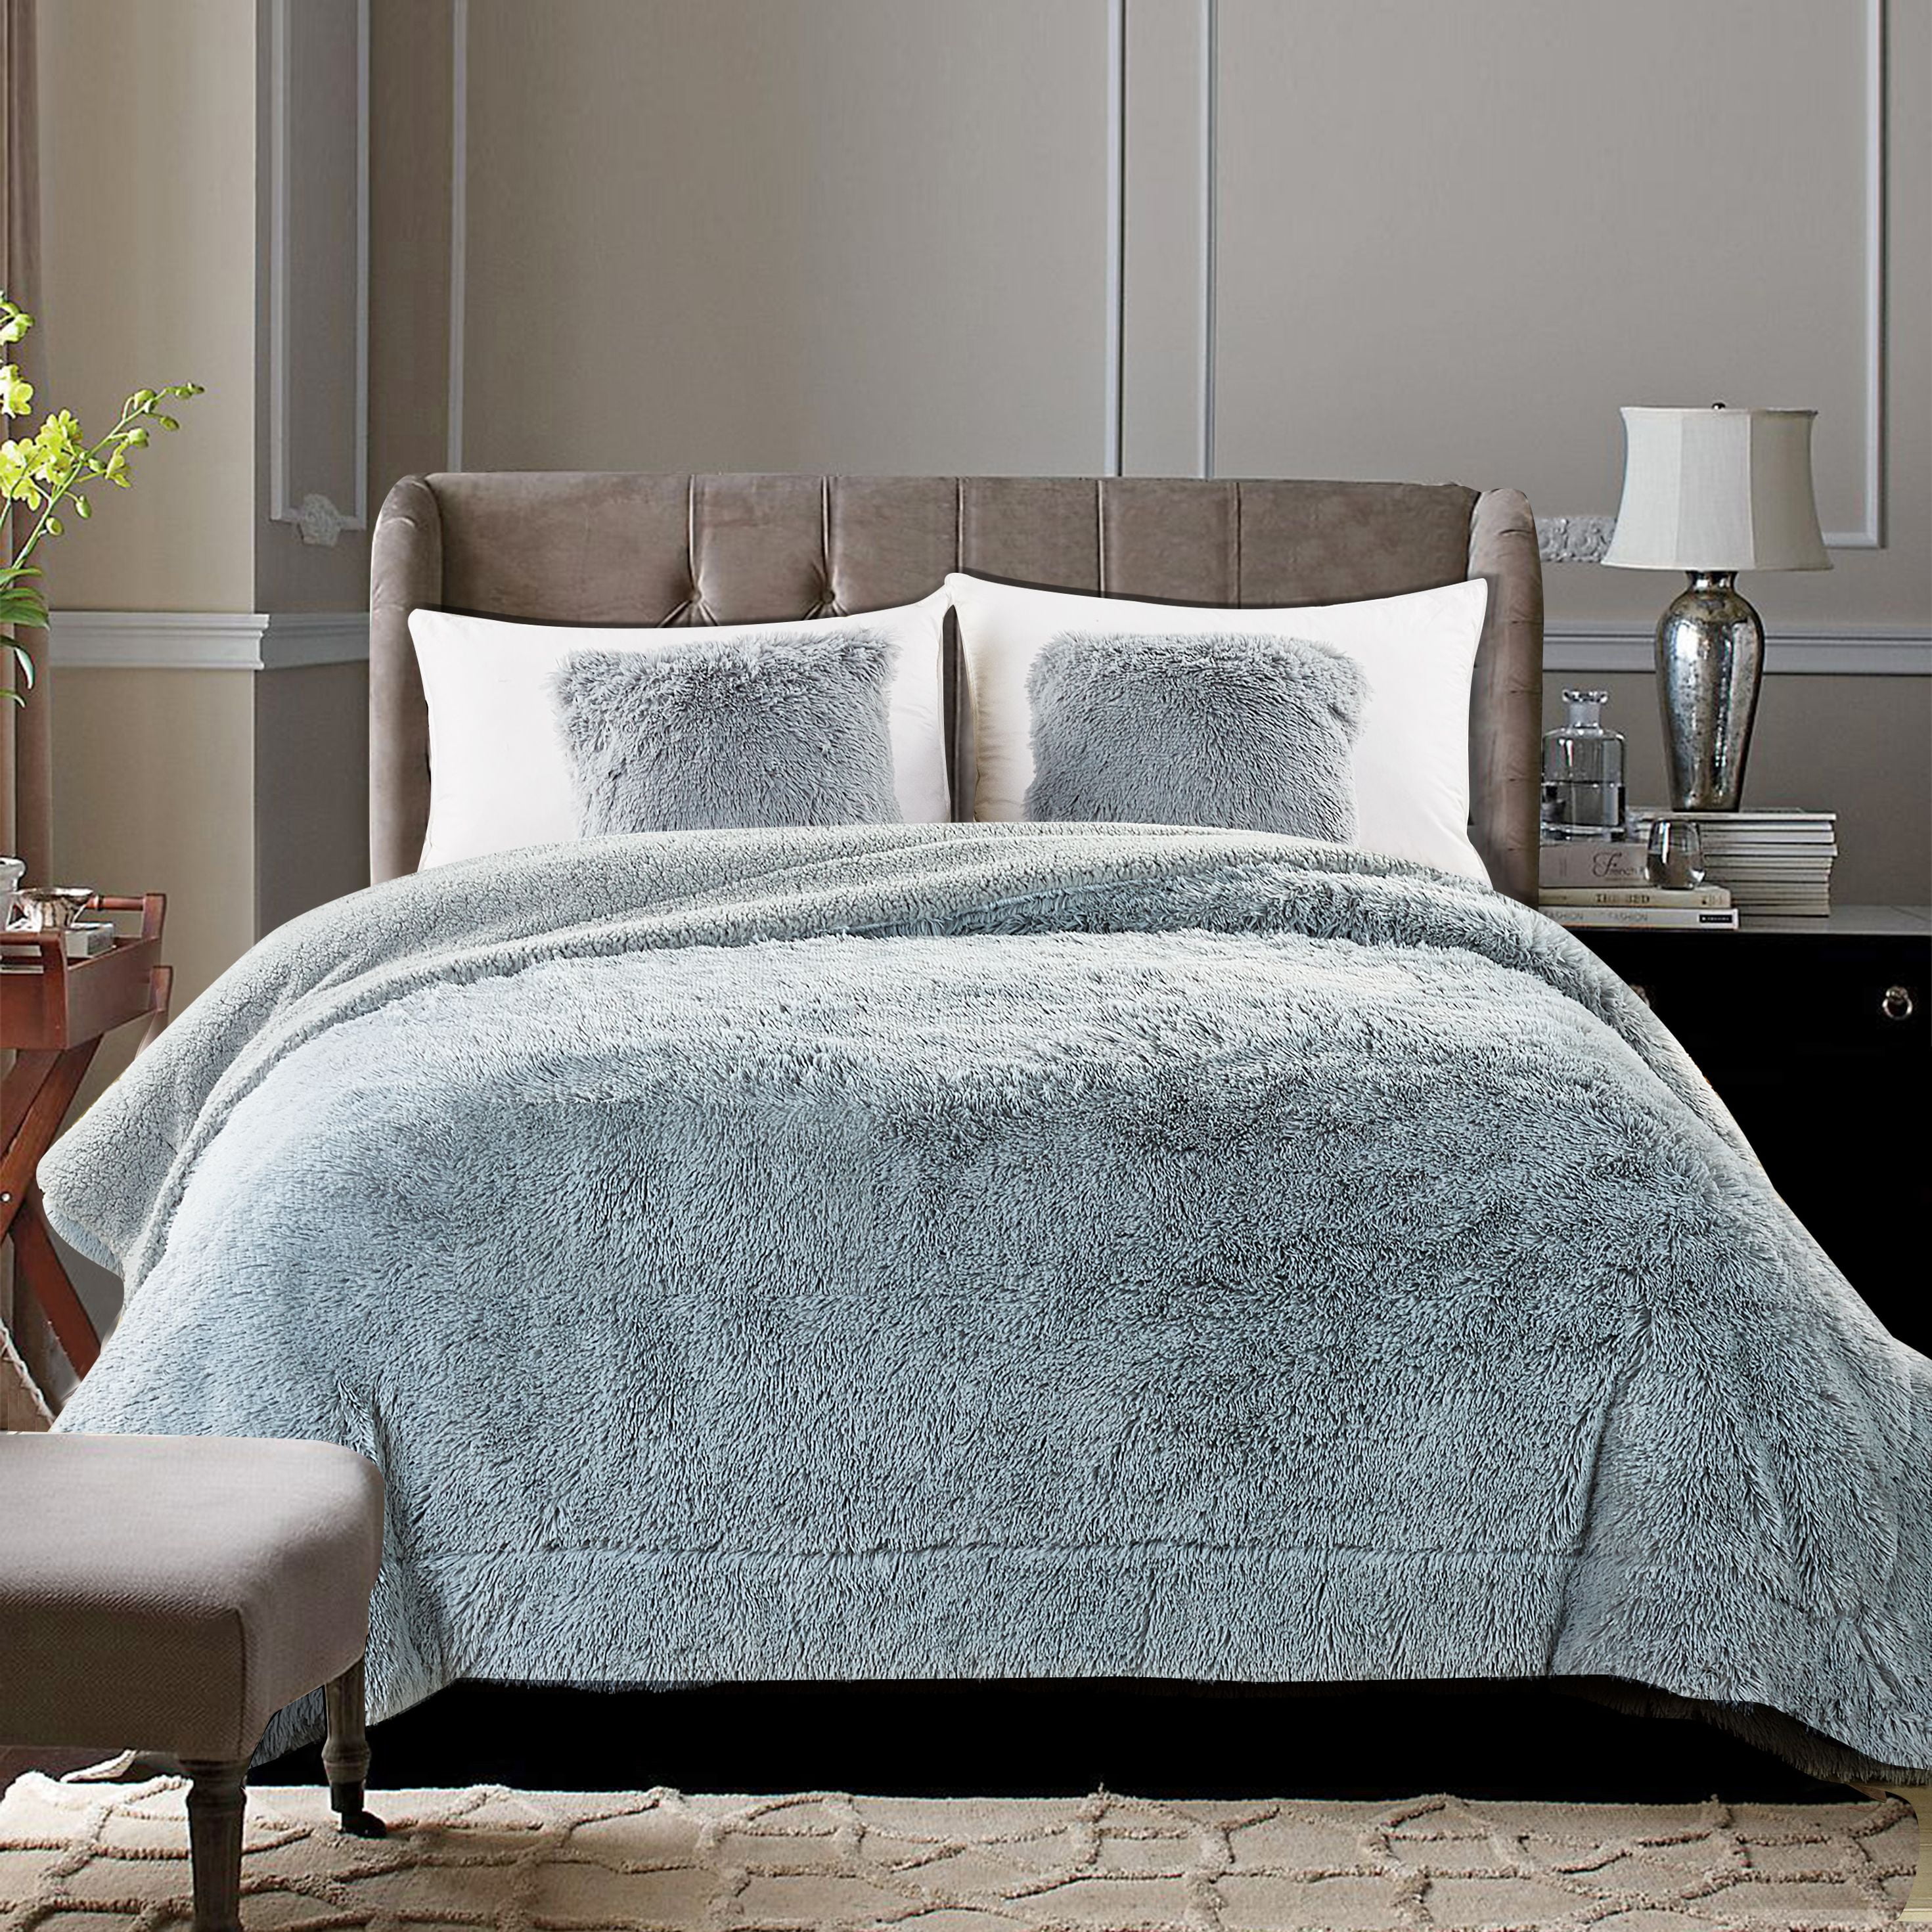 Super Soft Teddy Bear Blanket Throw Cosy Snuggly Warm Bed Sofa Luxury Fleecy 